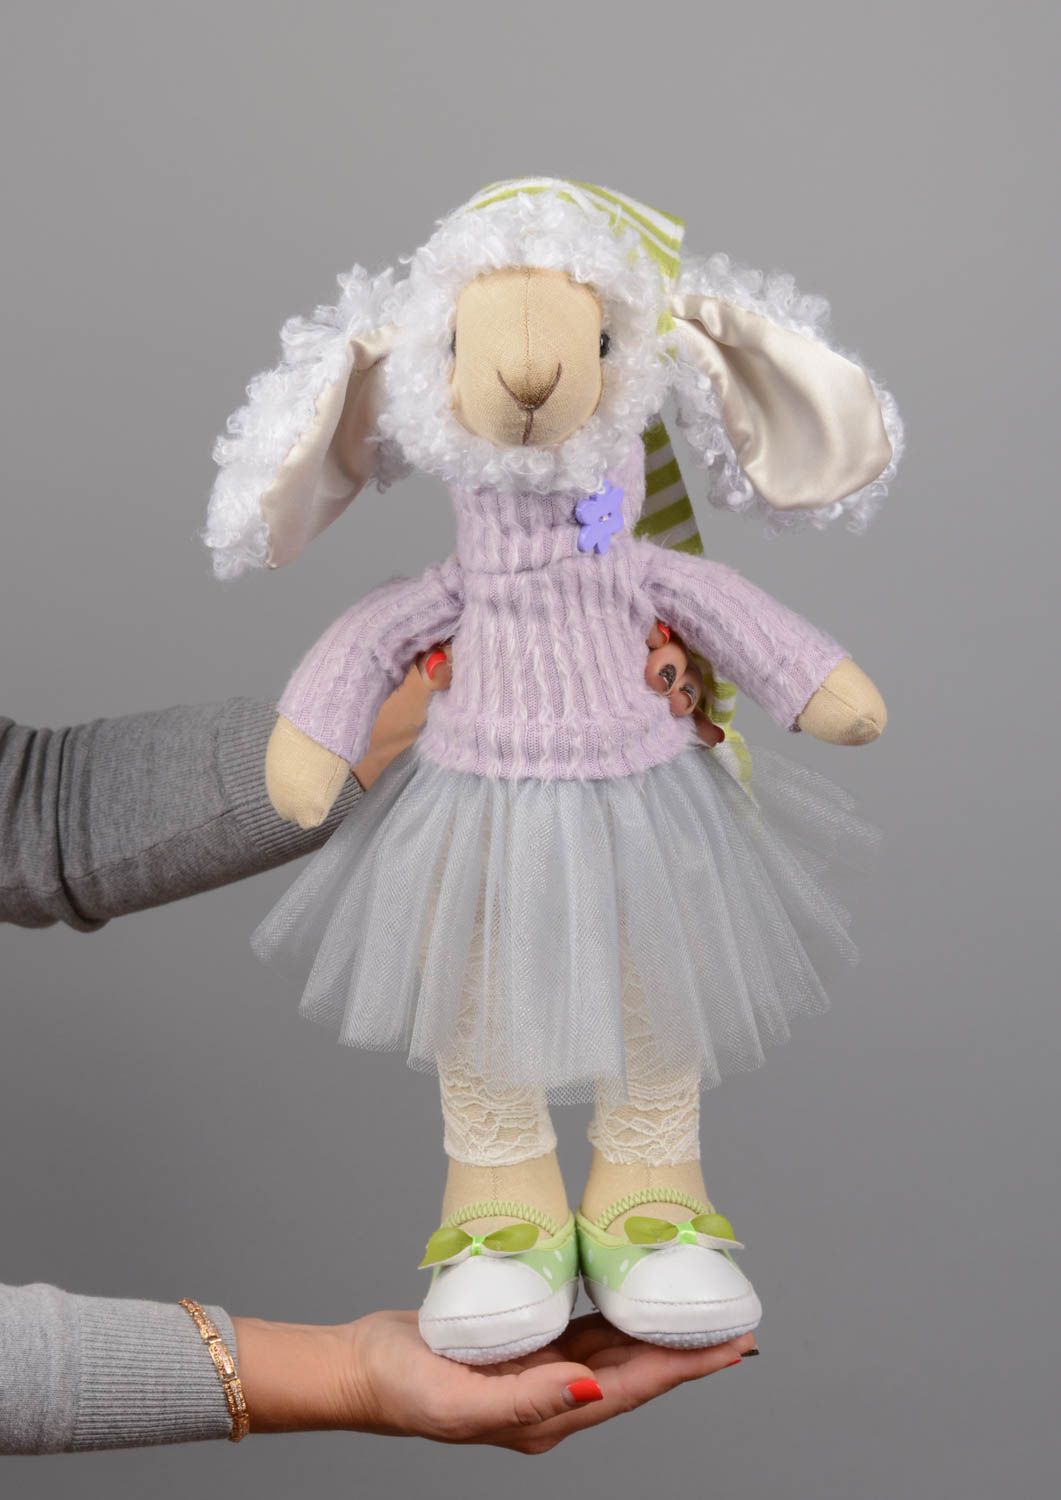 Textil Kuscheltier Schaf im Kleid niedlich Spielzeug für Kinder und Deko foto 5